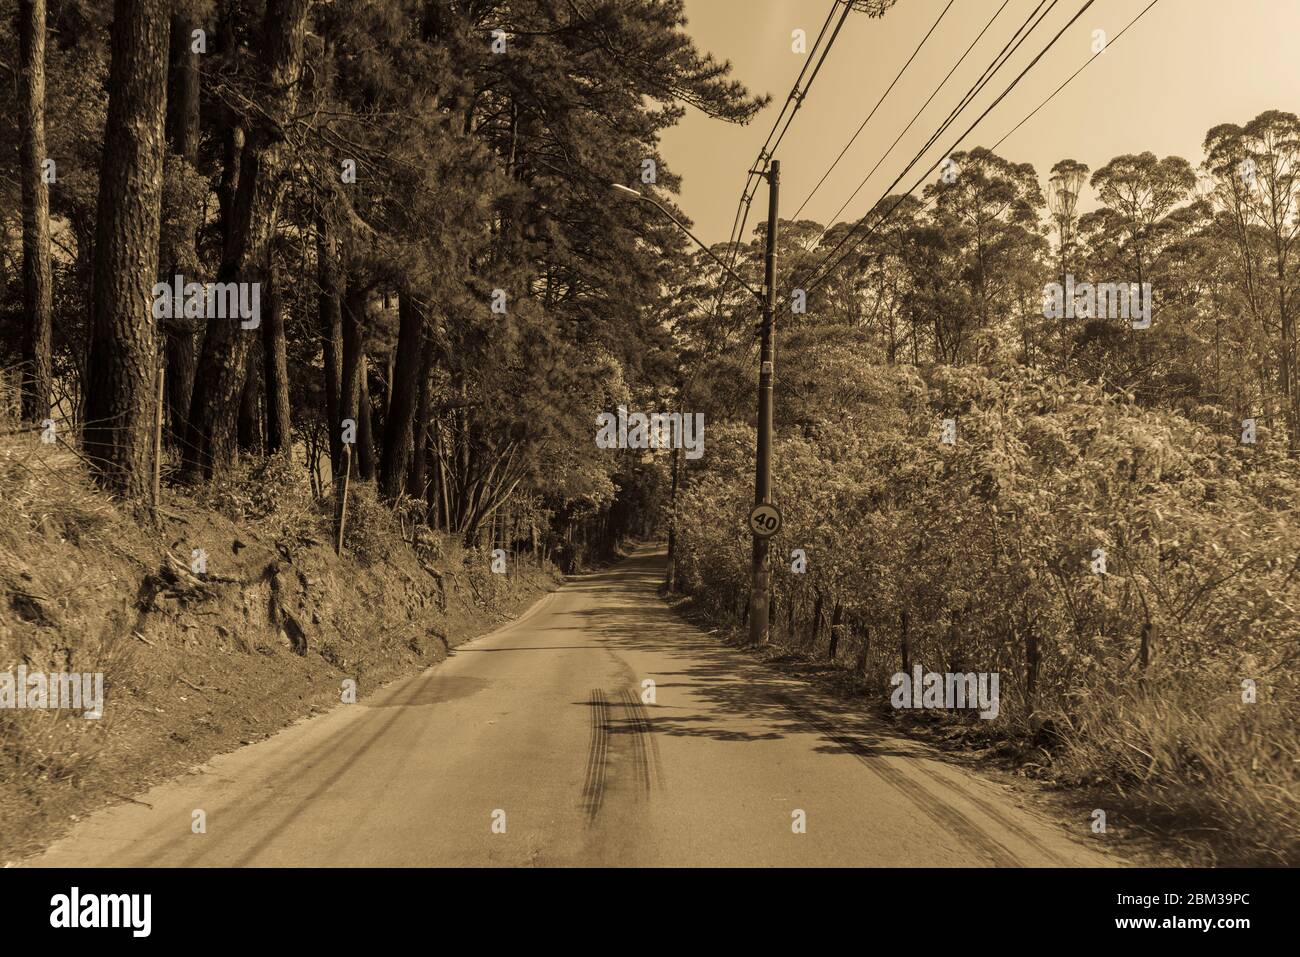 Conducir por la carretera rodeada de árboles, en tono sepia. Esta imagen también es buena para ser utilizada como fondo para los presentaions, también. Foto de stock